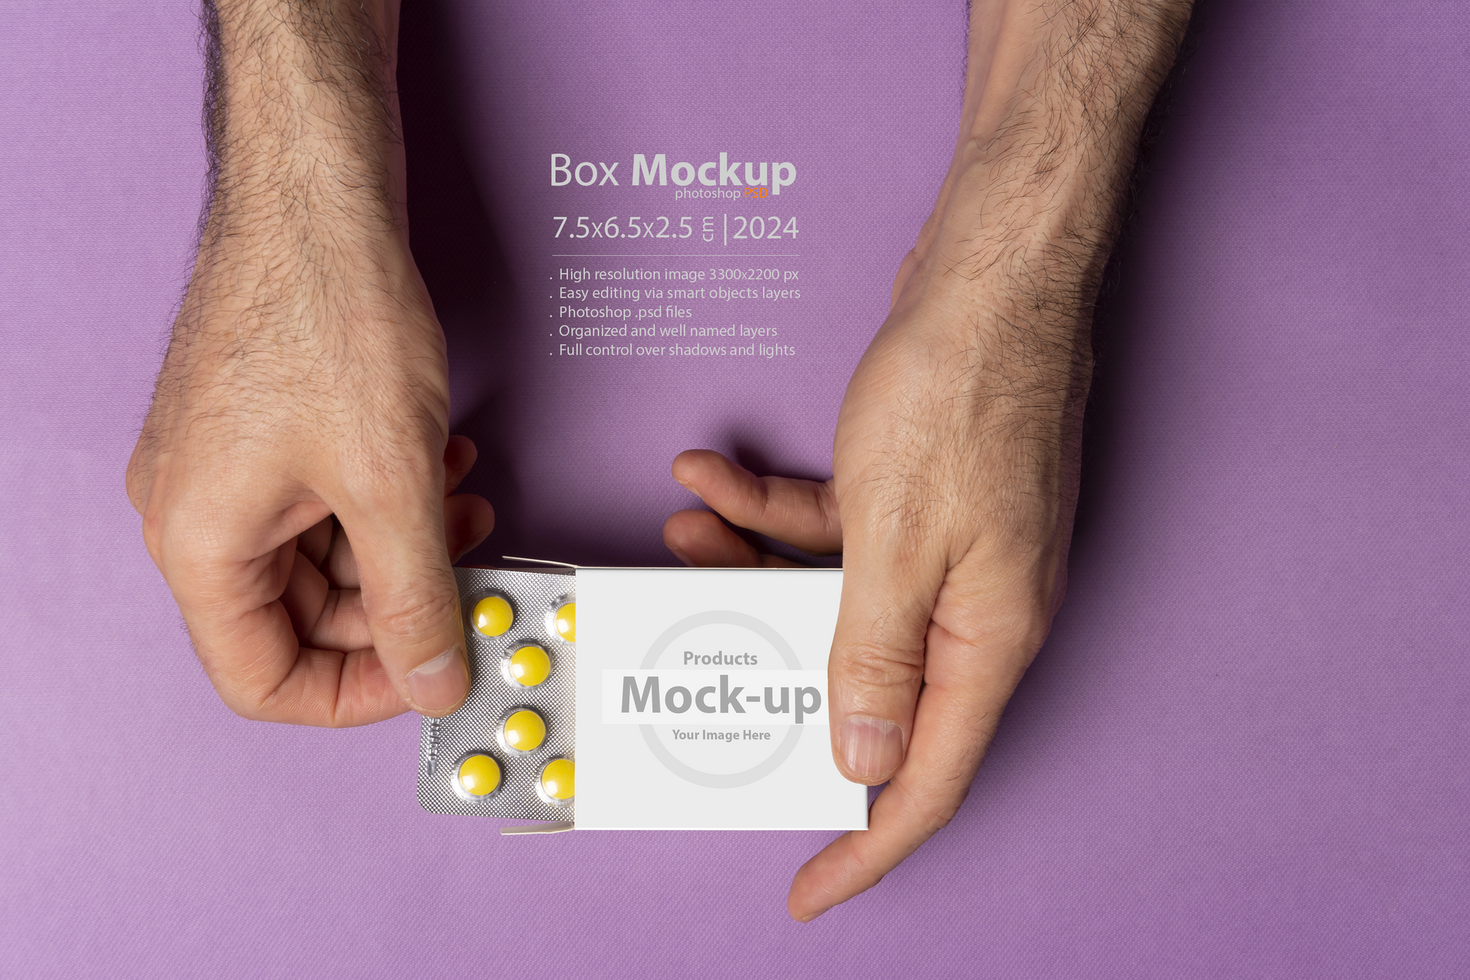 mannetje hand- brengen uit pillen tablet van doos in voorkant van Purper achtergrond mock-up serie psd